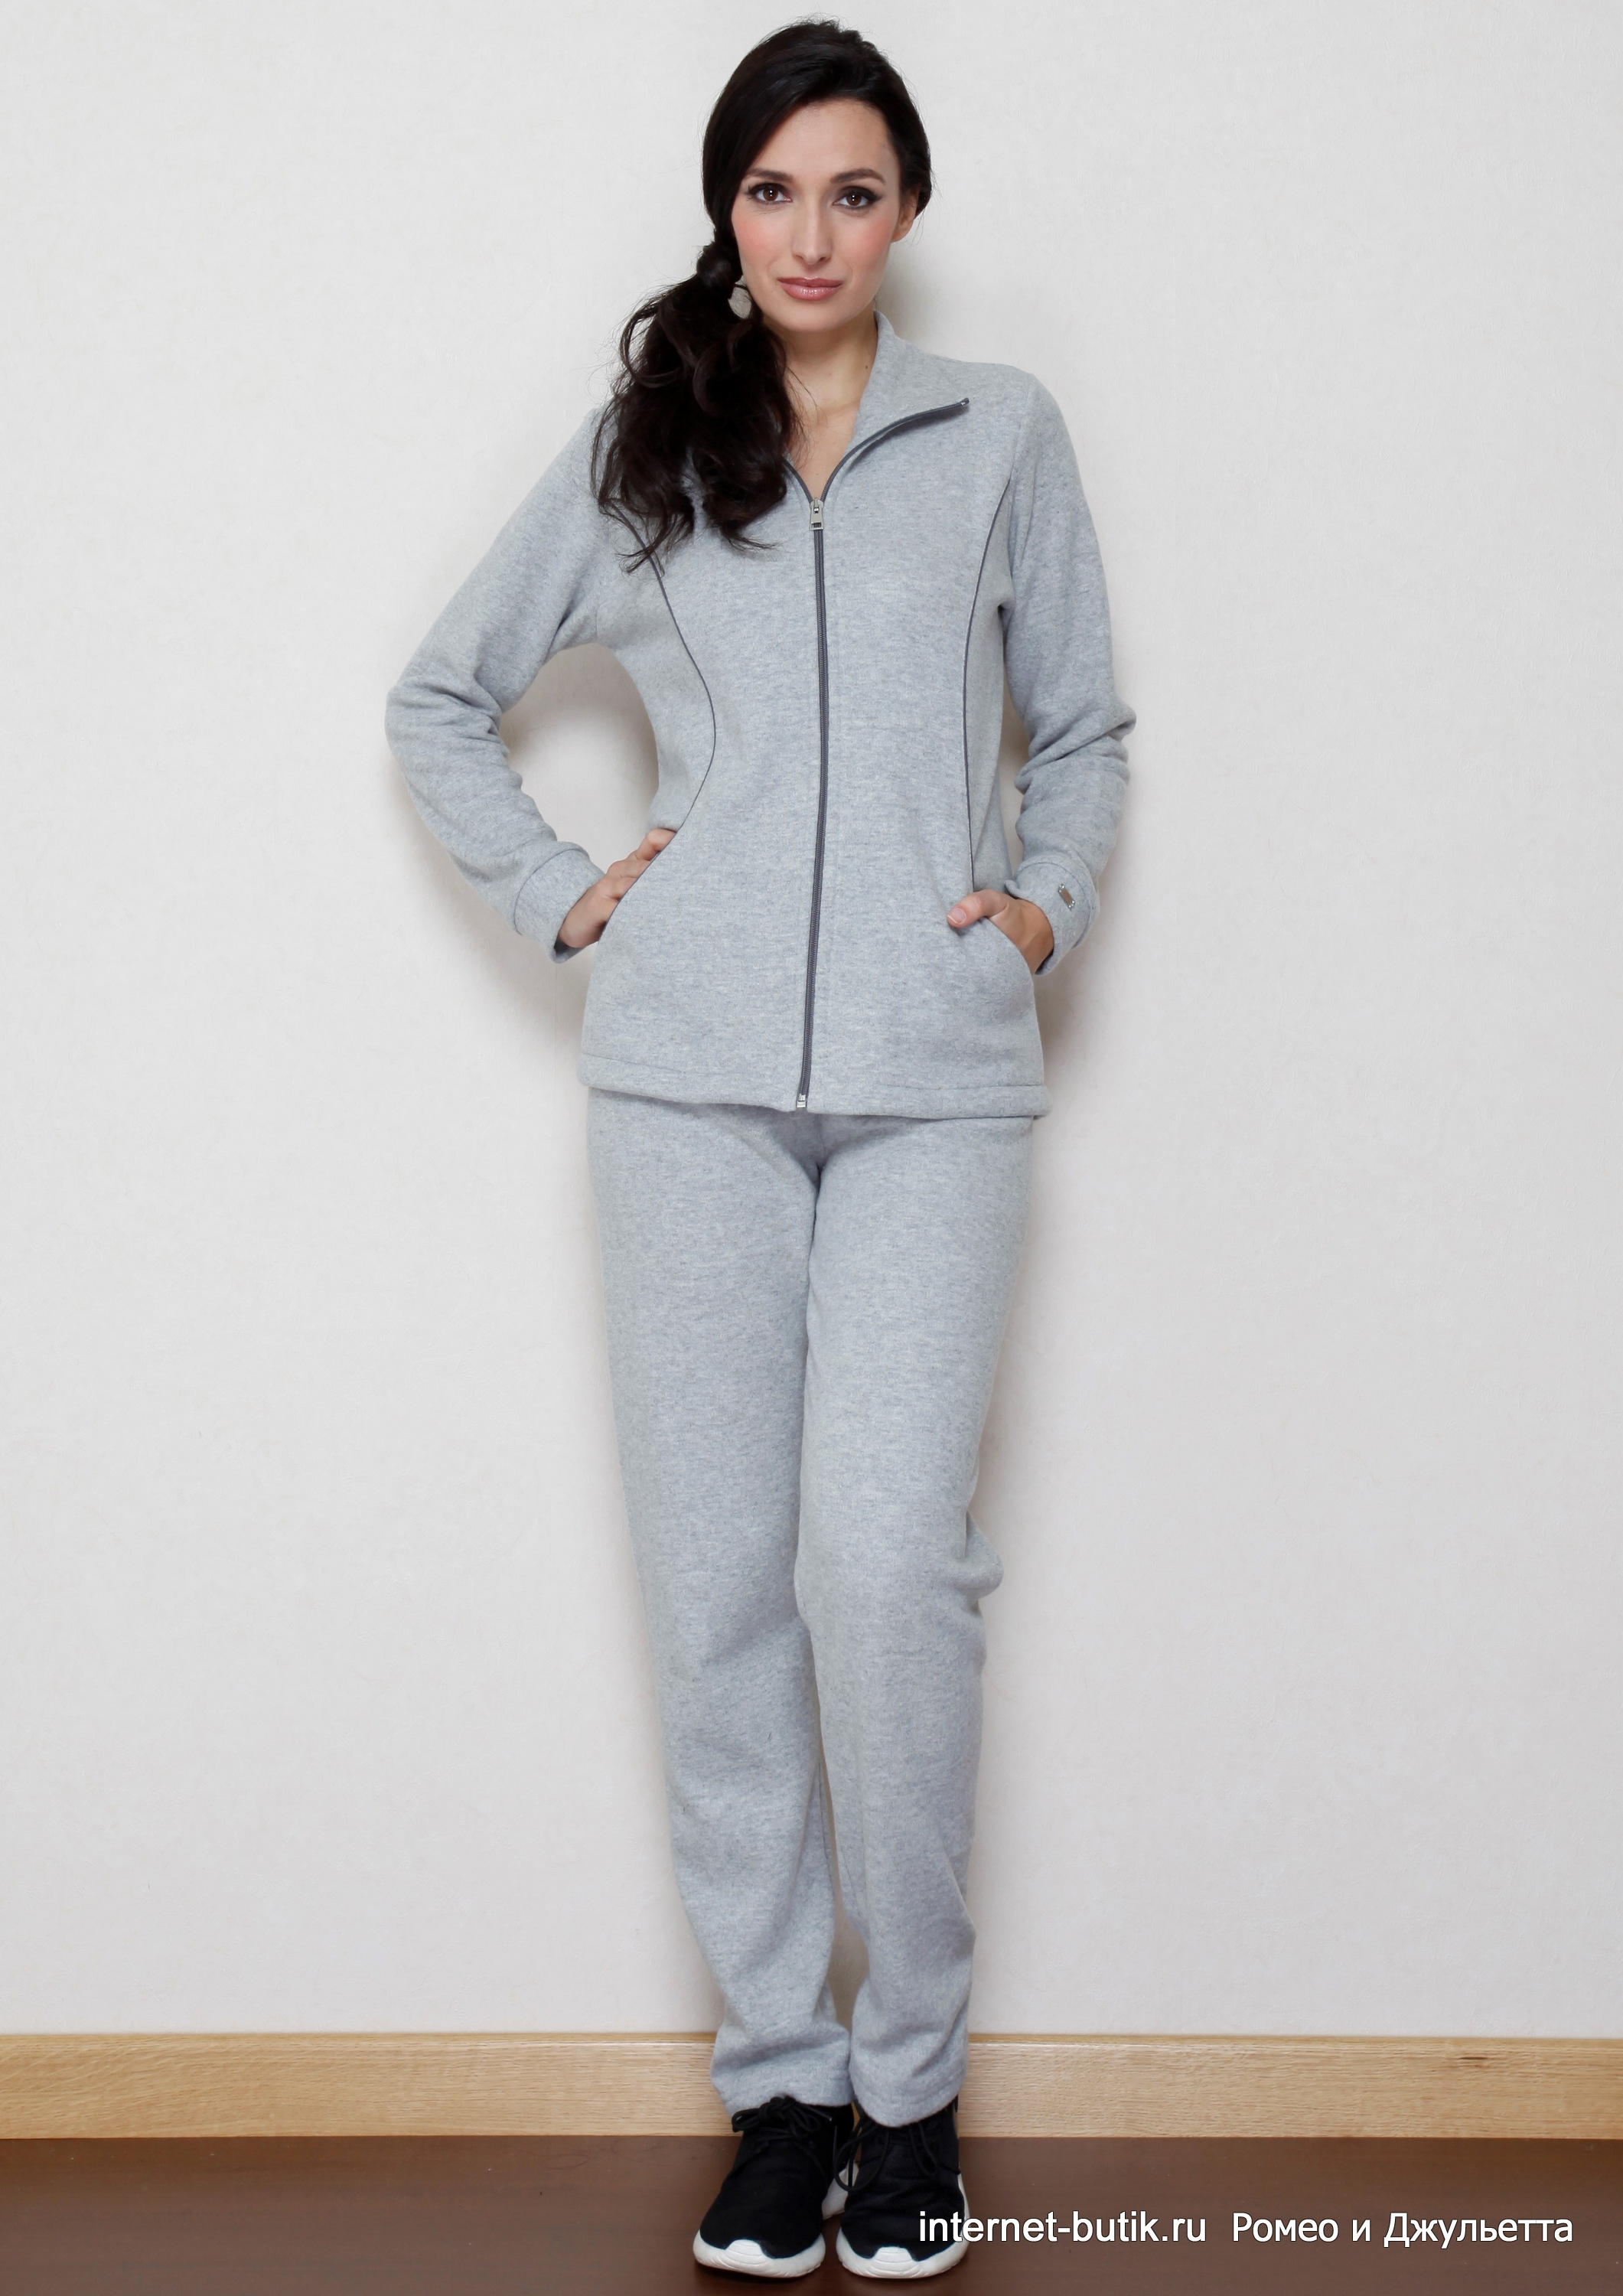 Мужское горячее термобелье купить по купить женские пижамы басовитым расценкам в интернет-магазине Joom